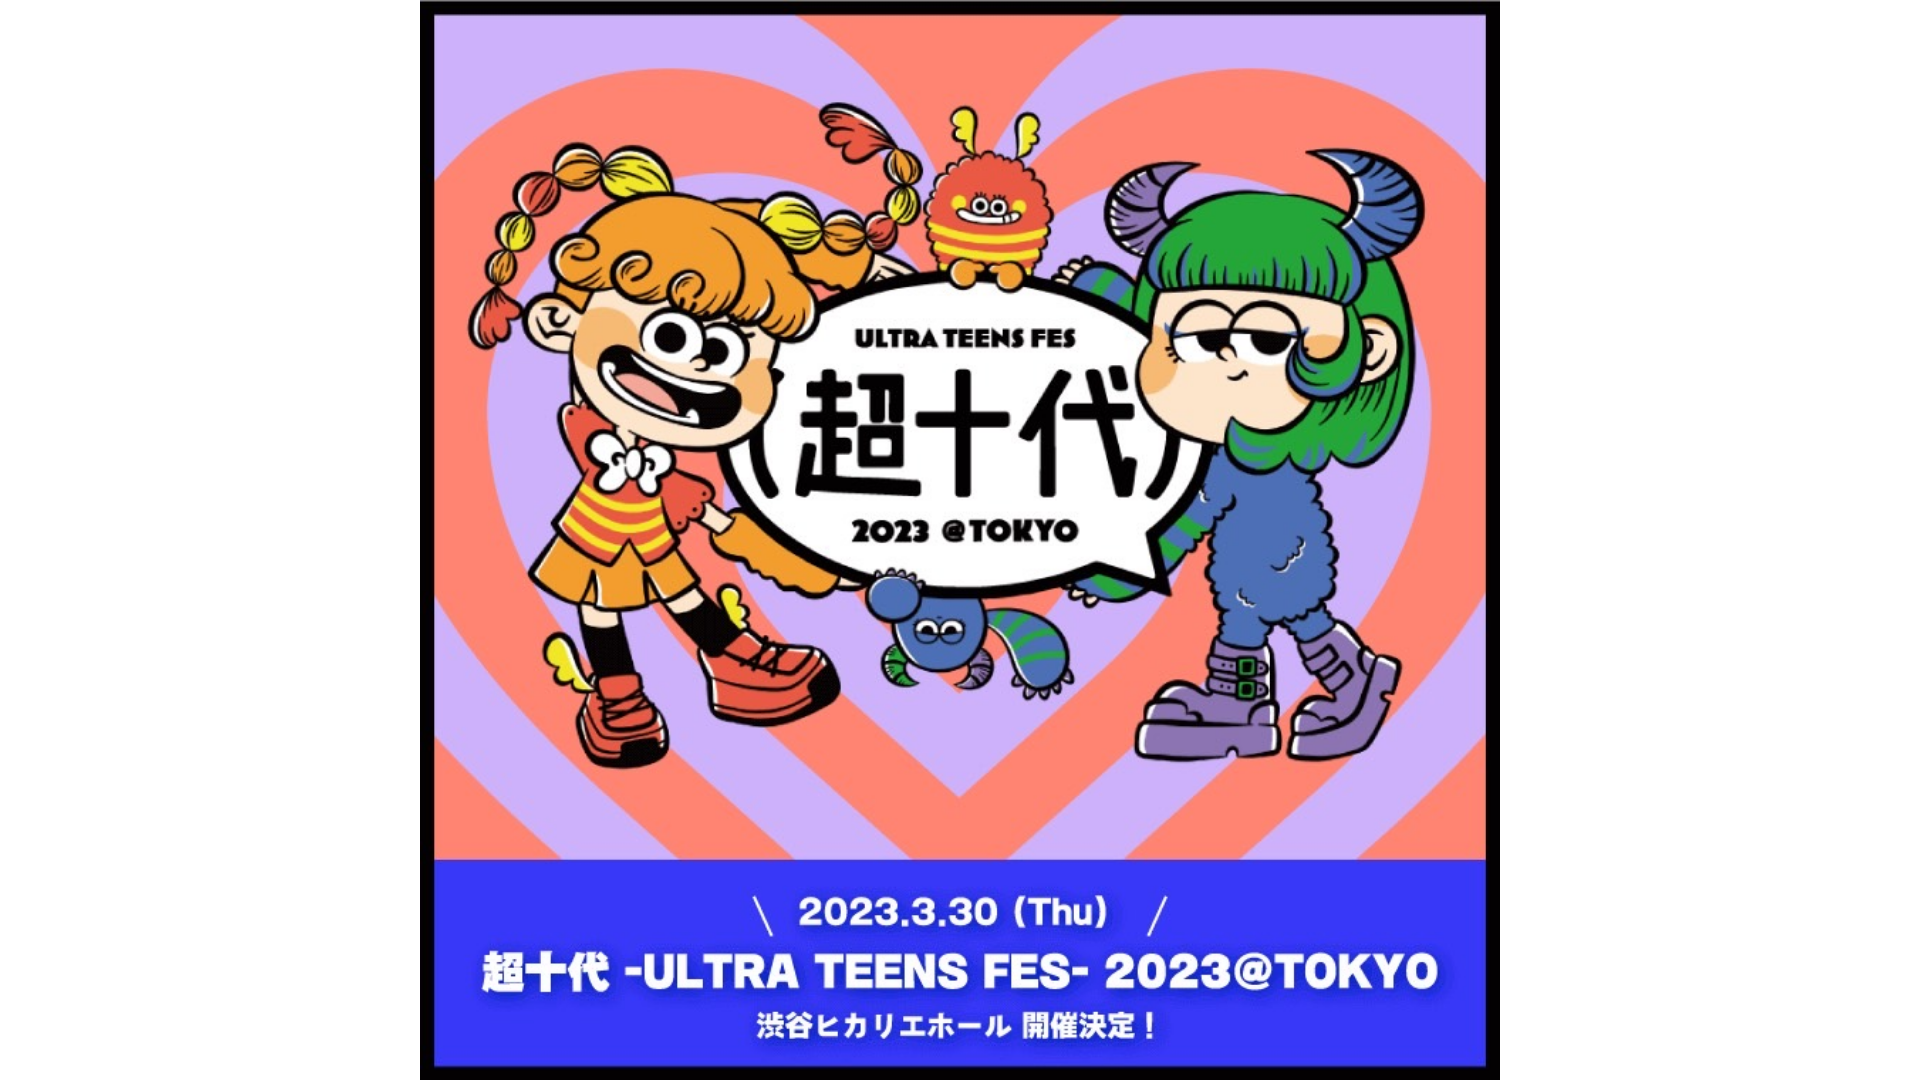 マリナ、「超十代 -ULTRA TEENS FES- 2023」に出演！